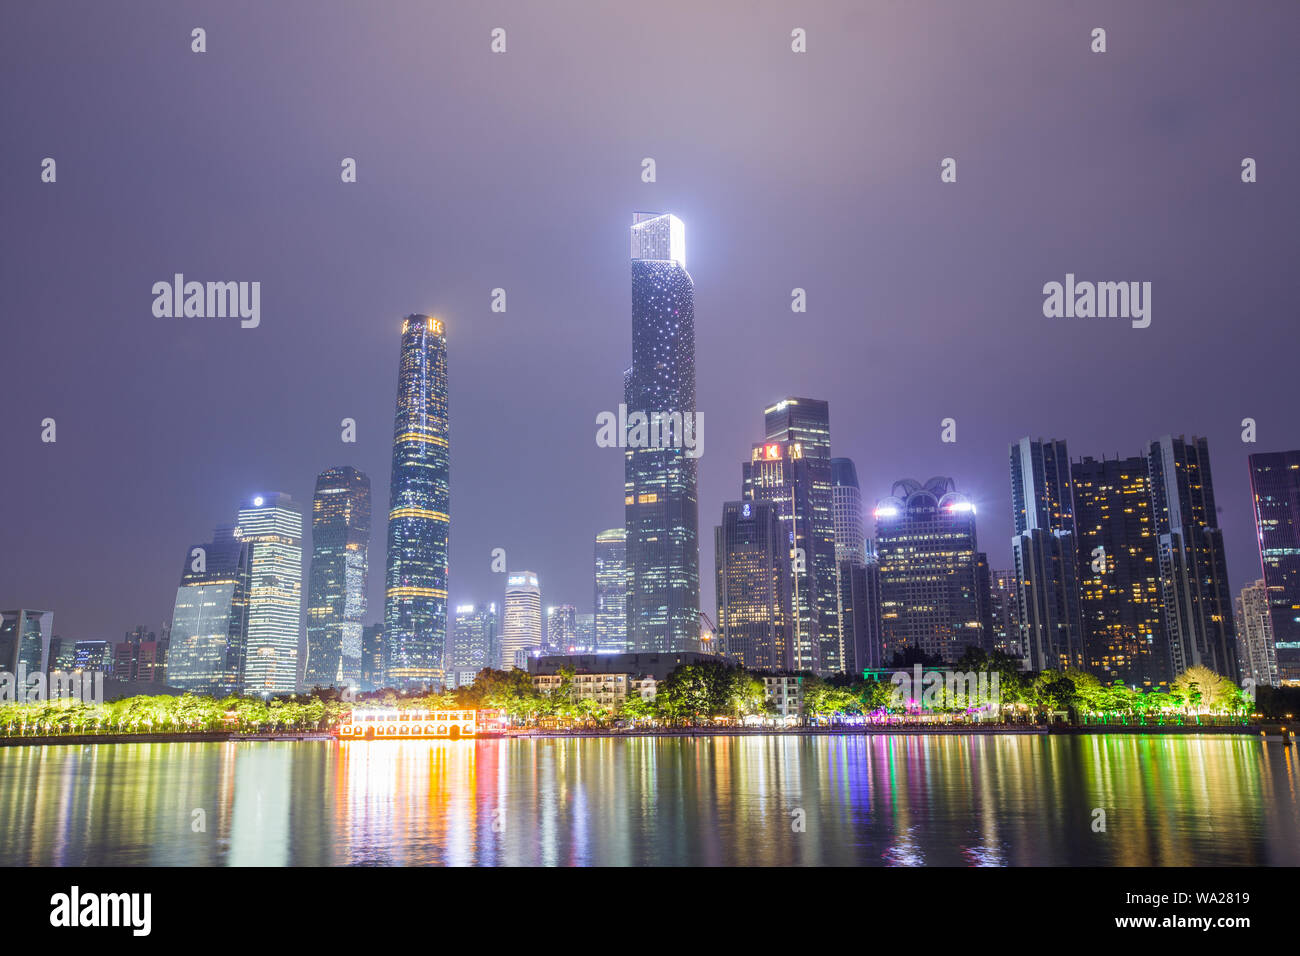 Guangzhou city at night Stock Photo - Alamy